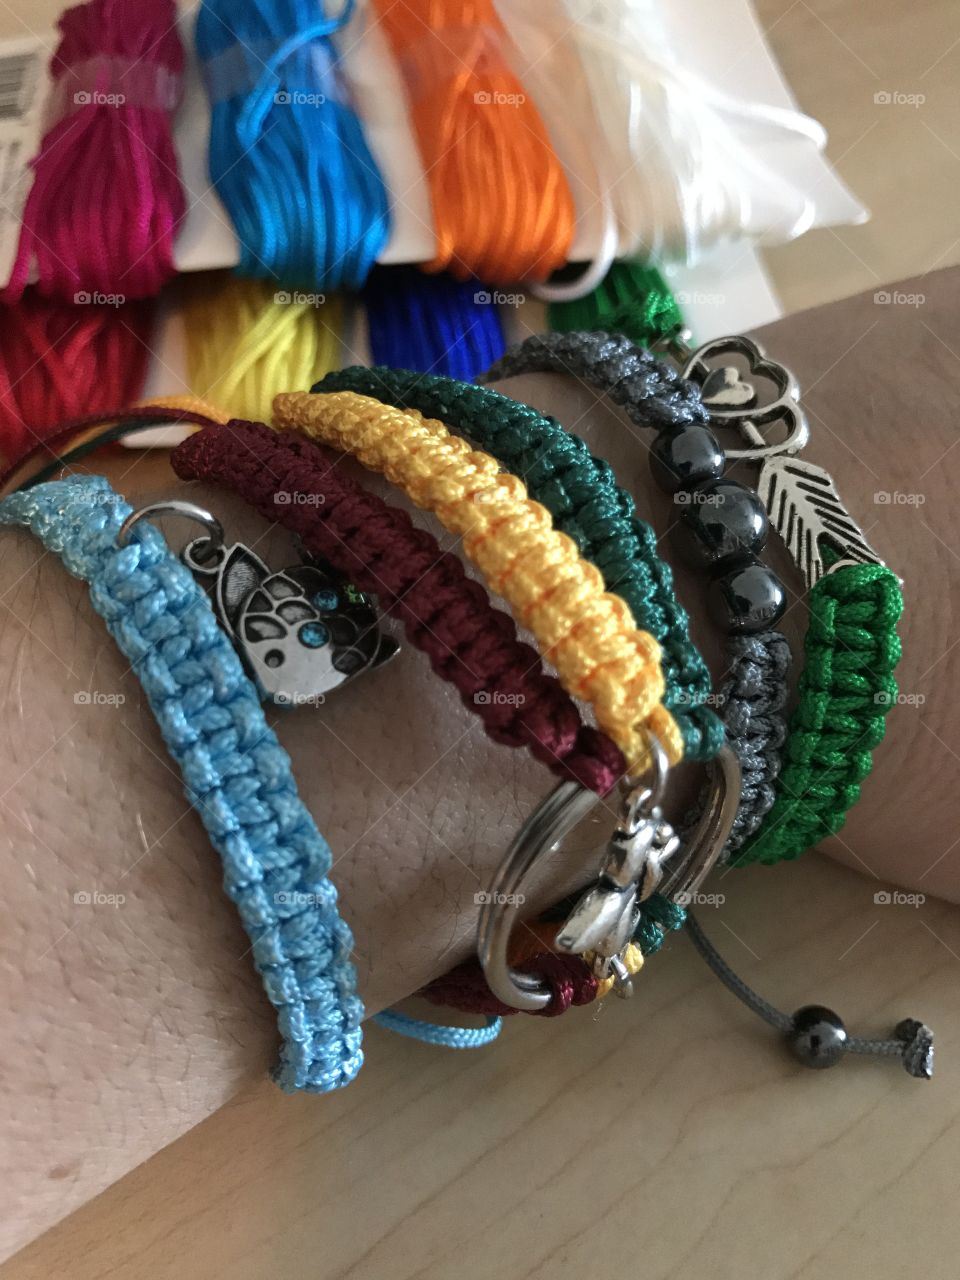 Which bracelets do you like